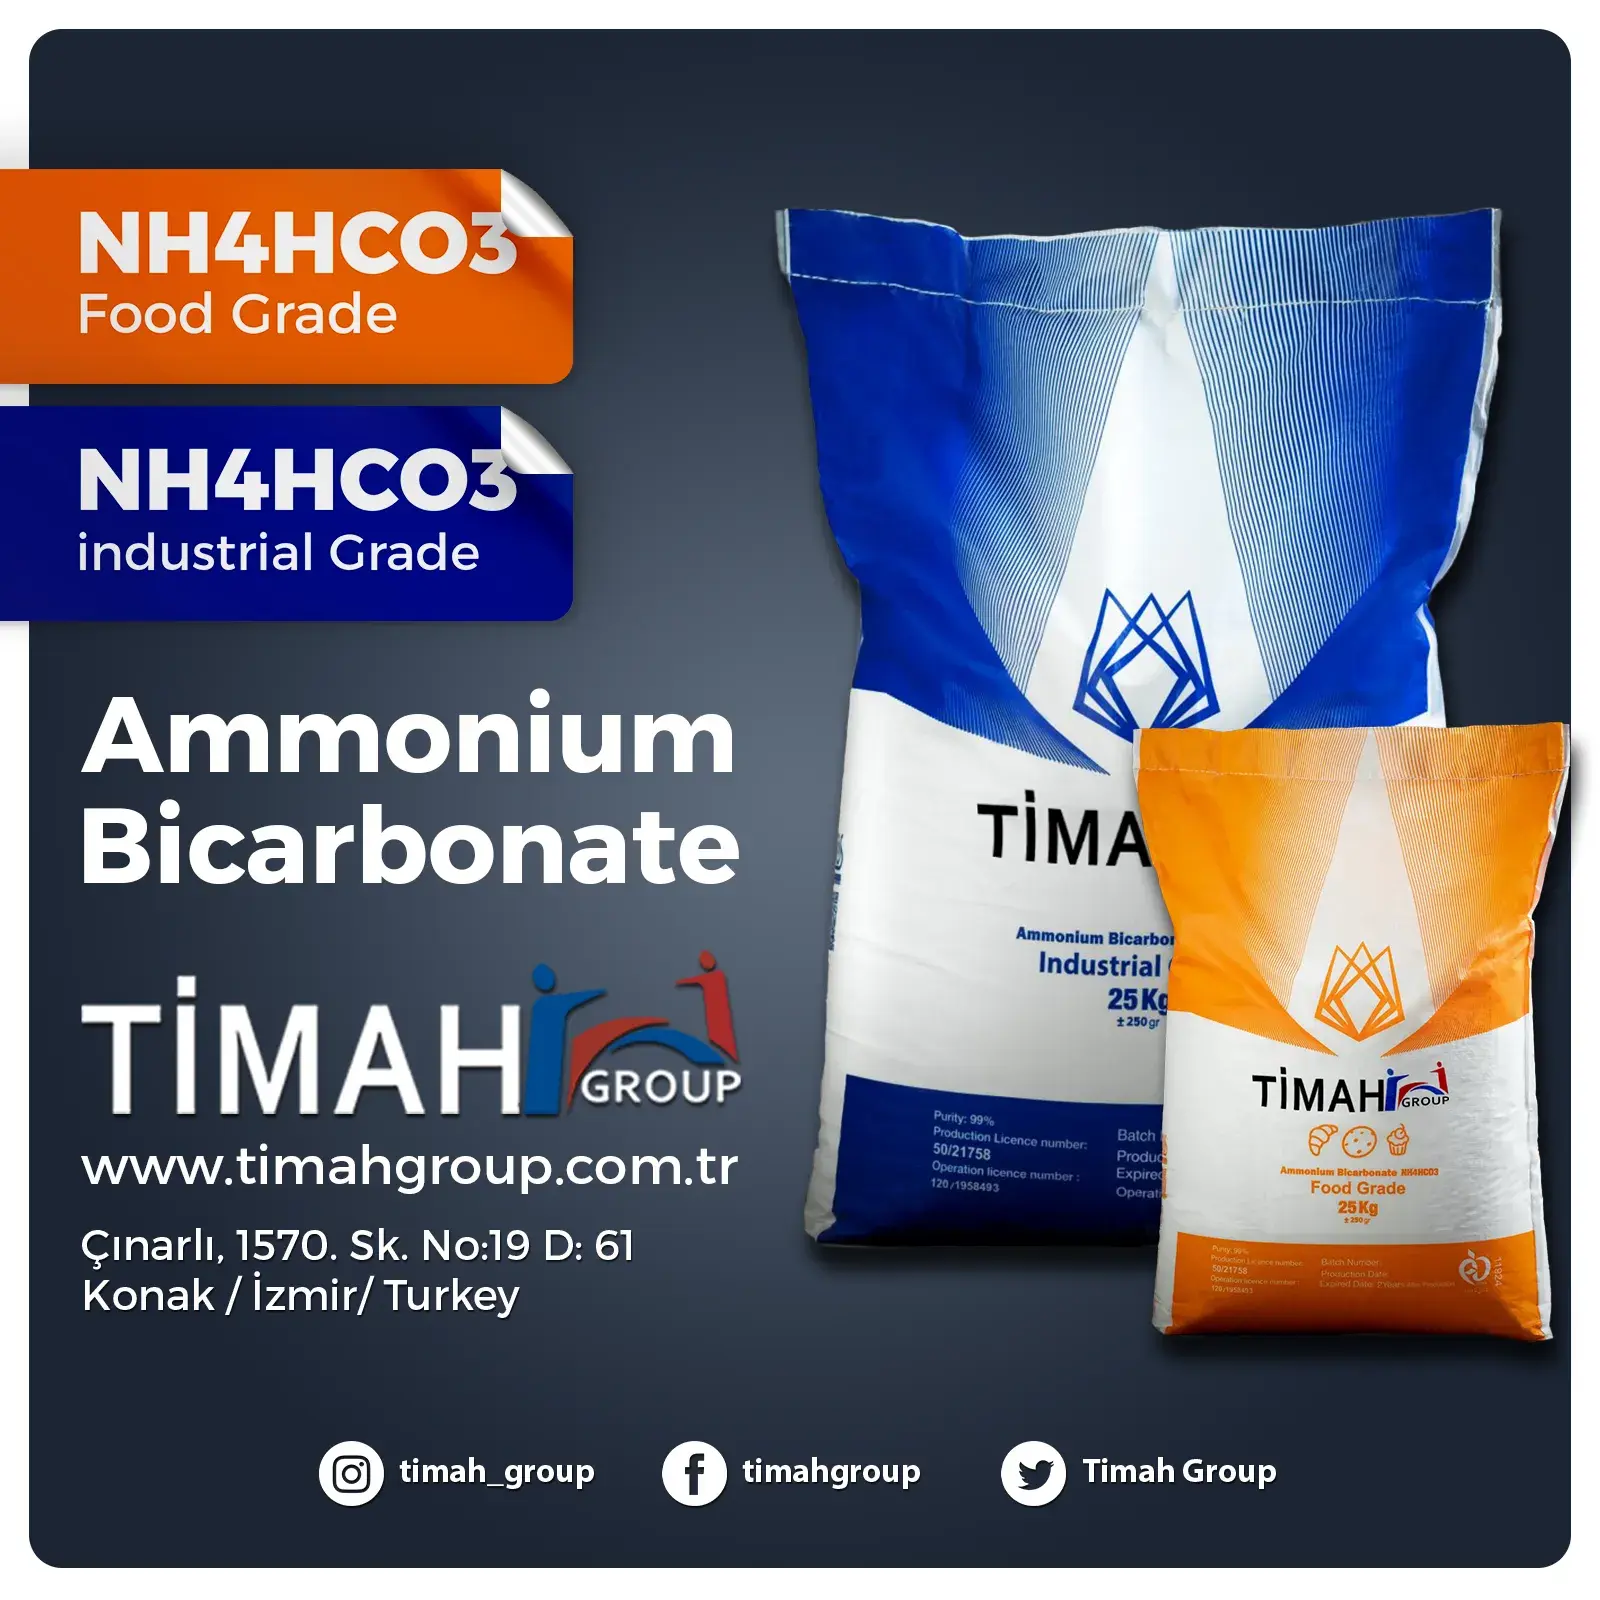 Ammonium Bicarbonate (NH4HcO3)